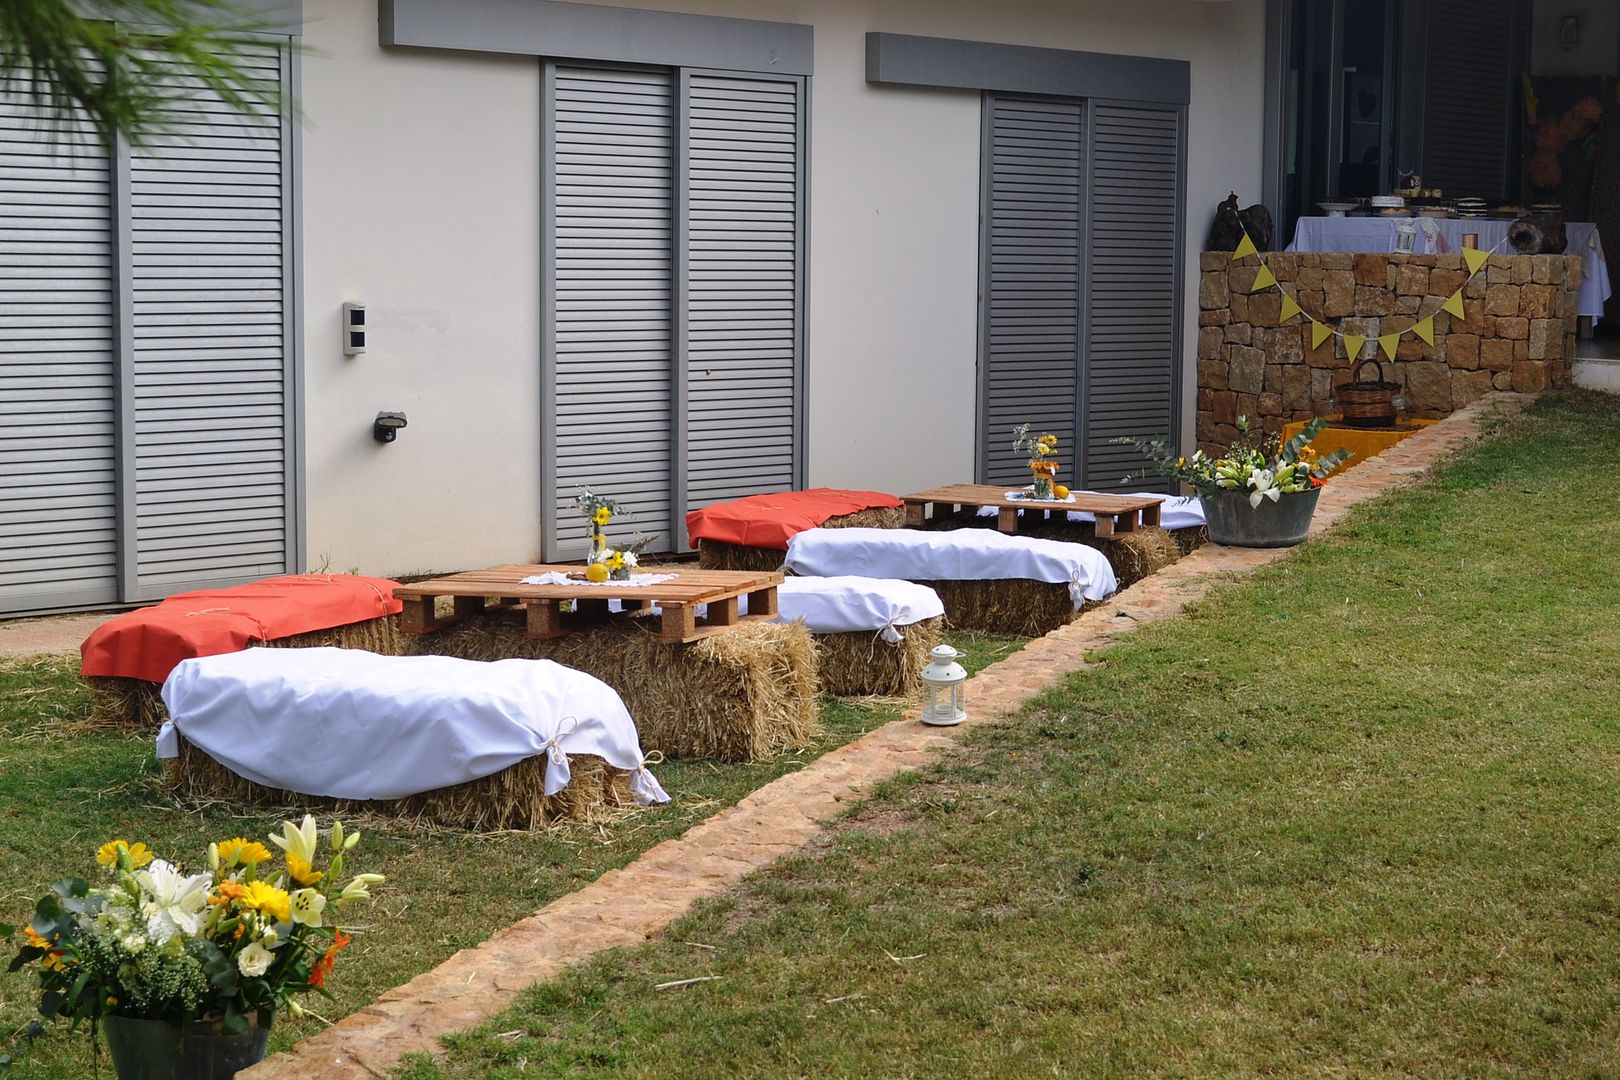  mesas de boda en la terraza con palets y balas de paja